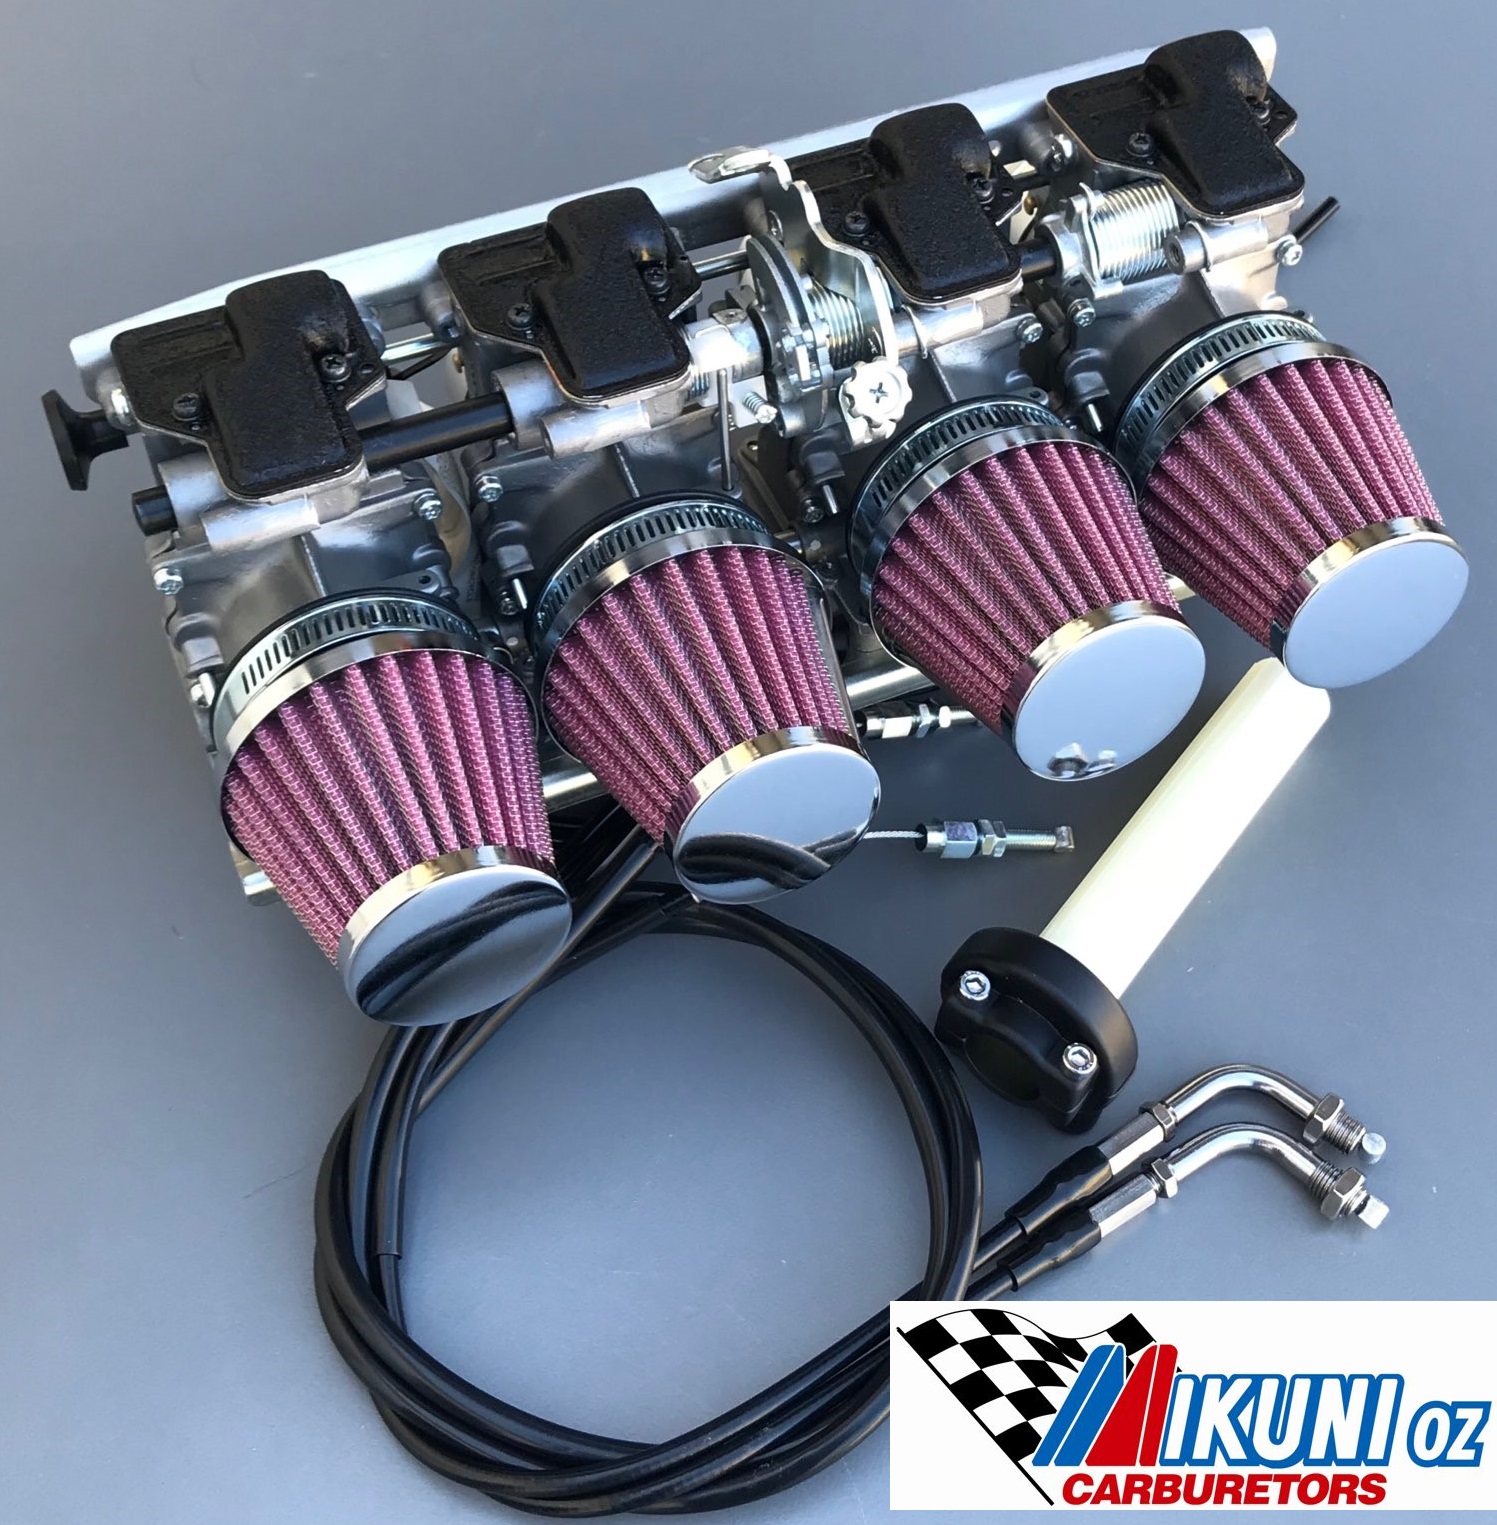 Ms prise mixte Carburateur Kit Honda CB 750 K quatre 69-76